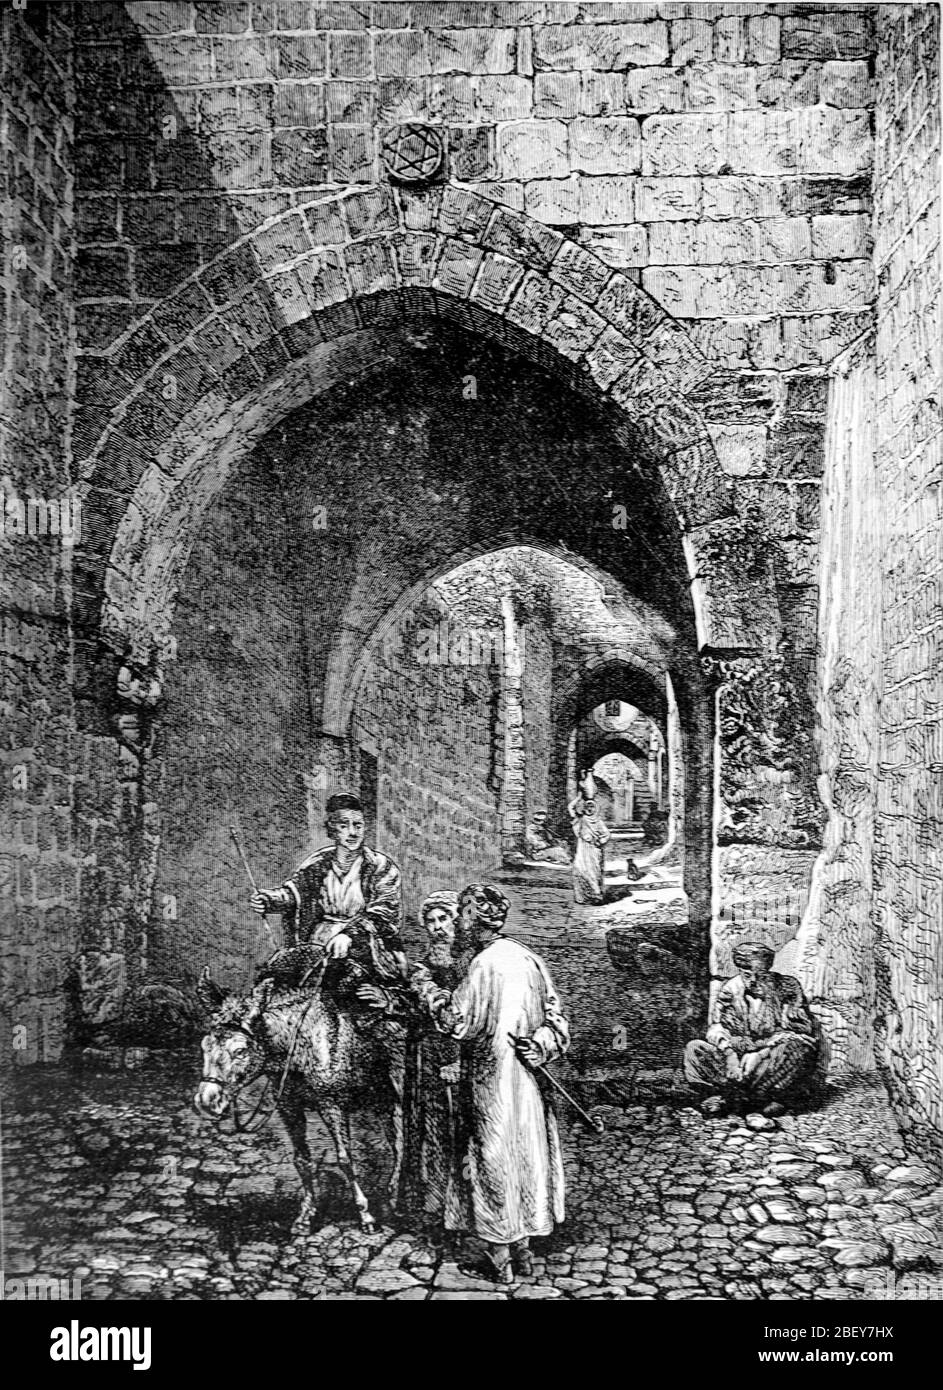 Scène de rue avec Donkey dans la vieille ville ou le quartier historique de Jérusalem Israël. Vintage ou ancienne illustration ou gravure 1888 Banque D'Images